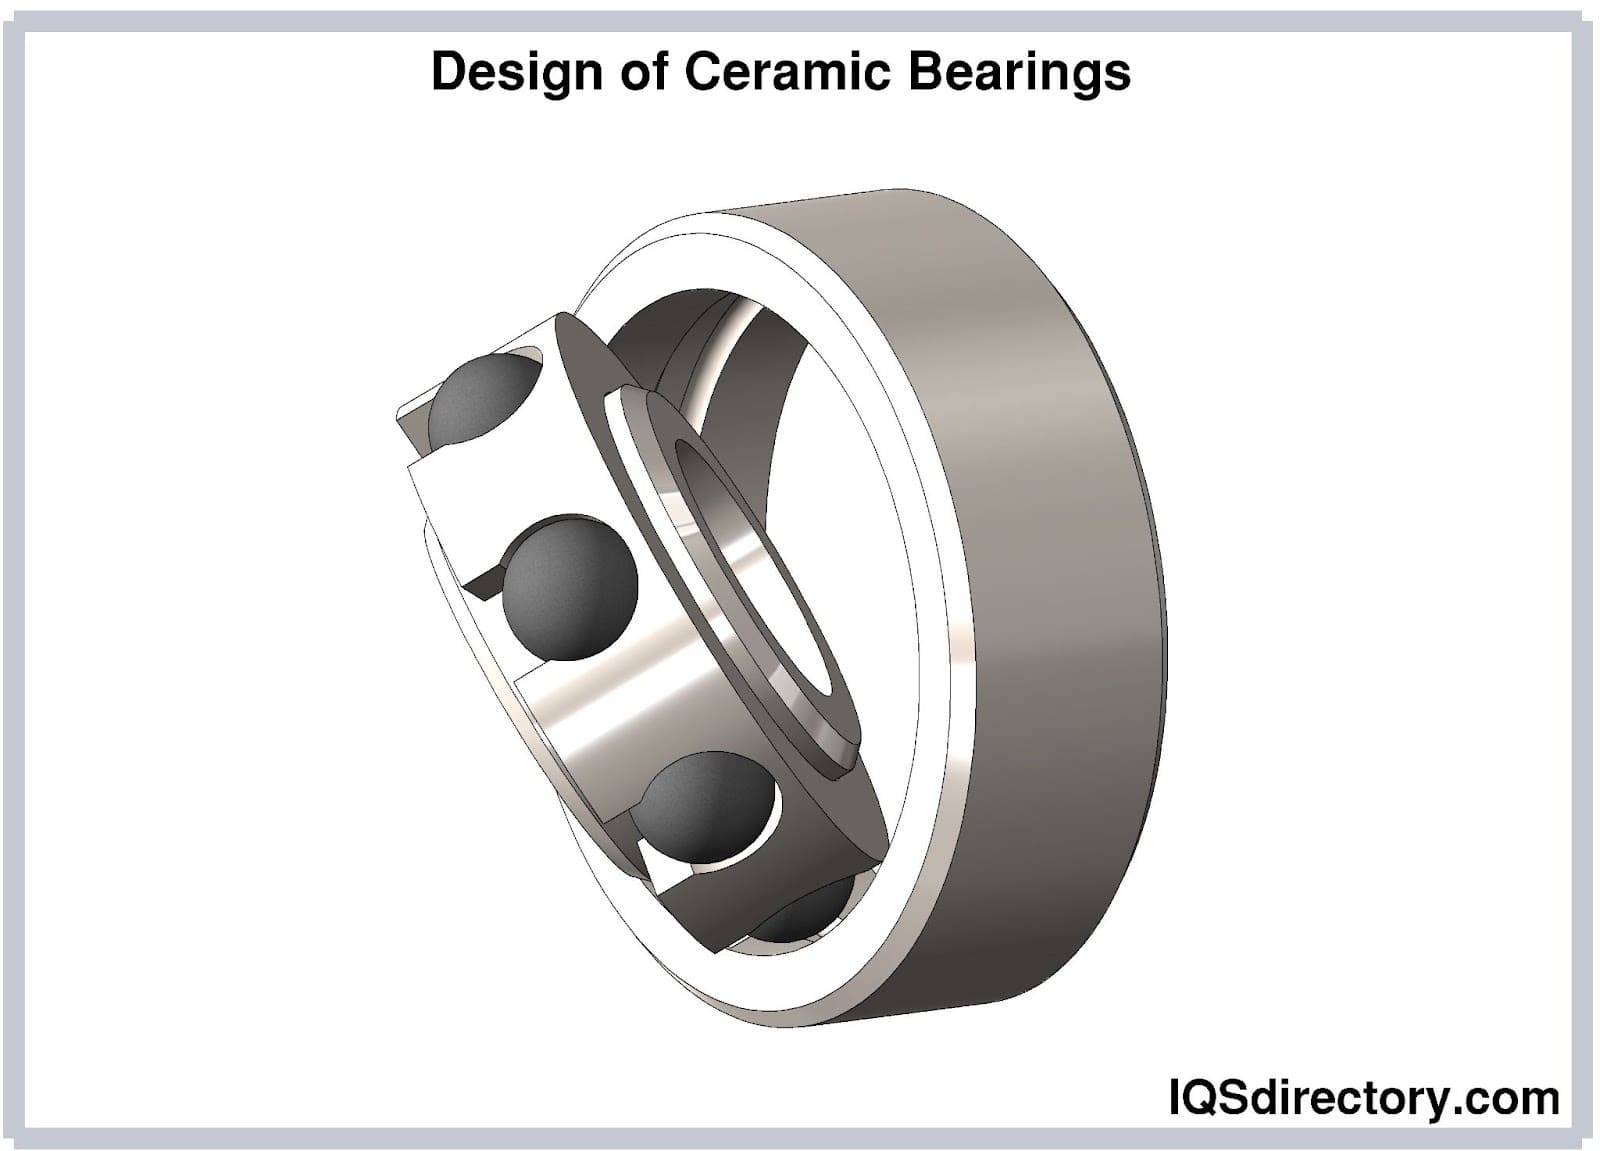 Design of Ceramic Bearings